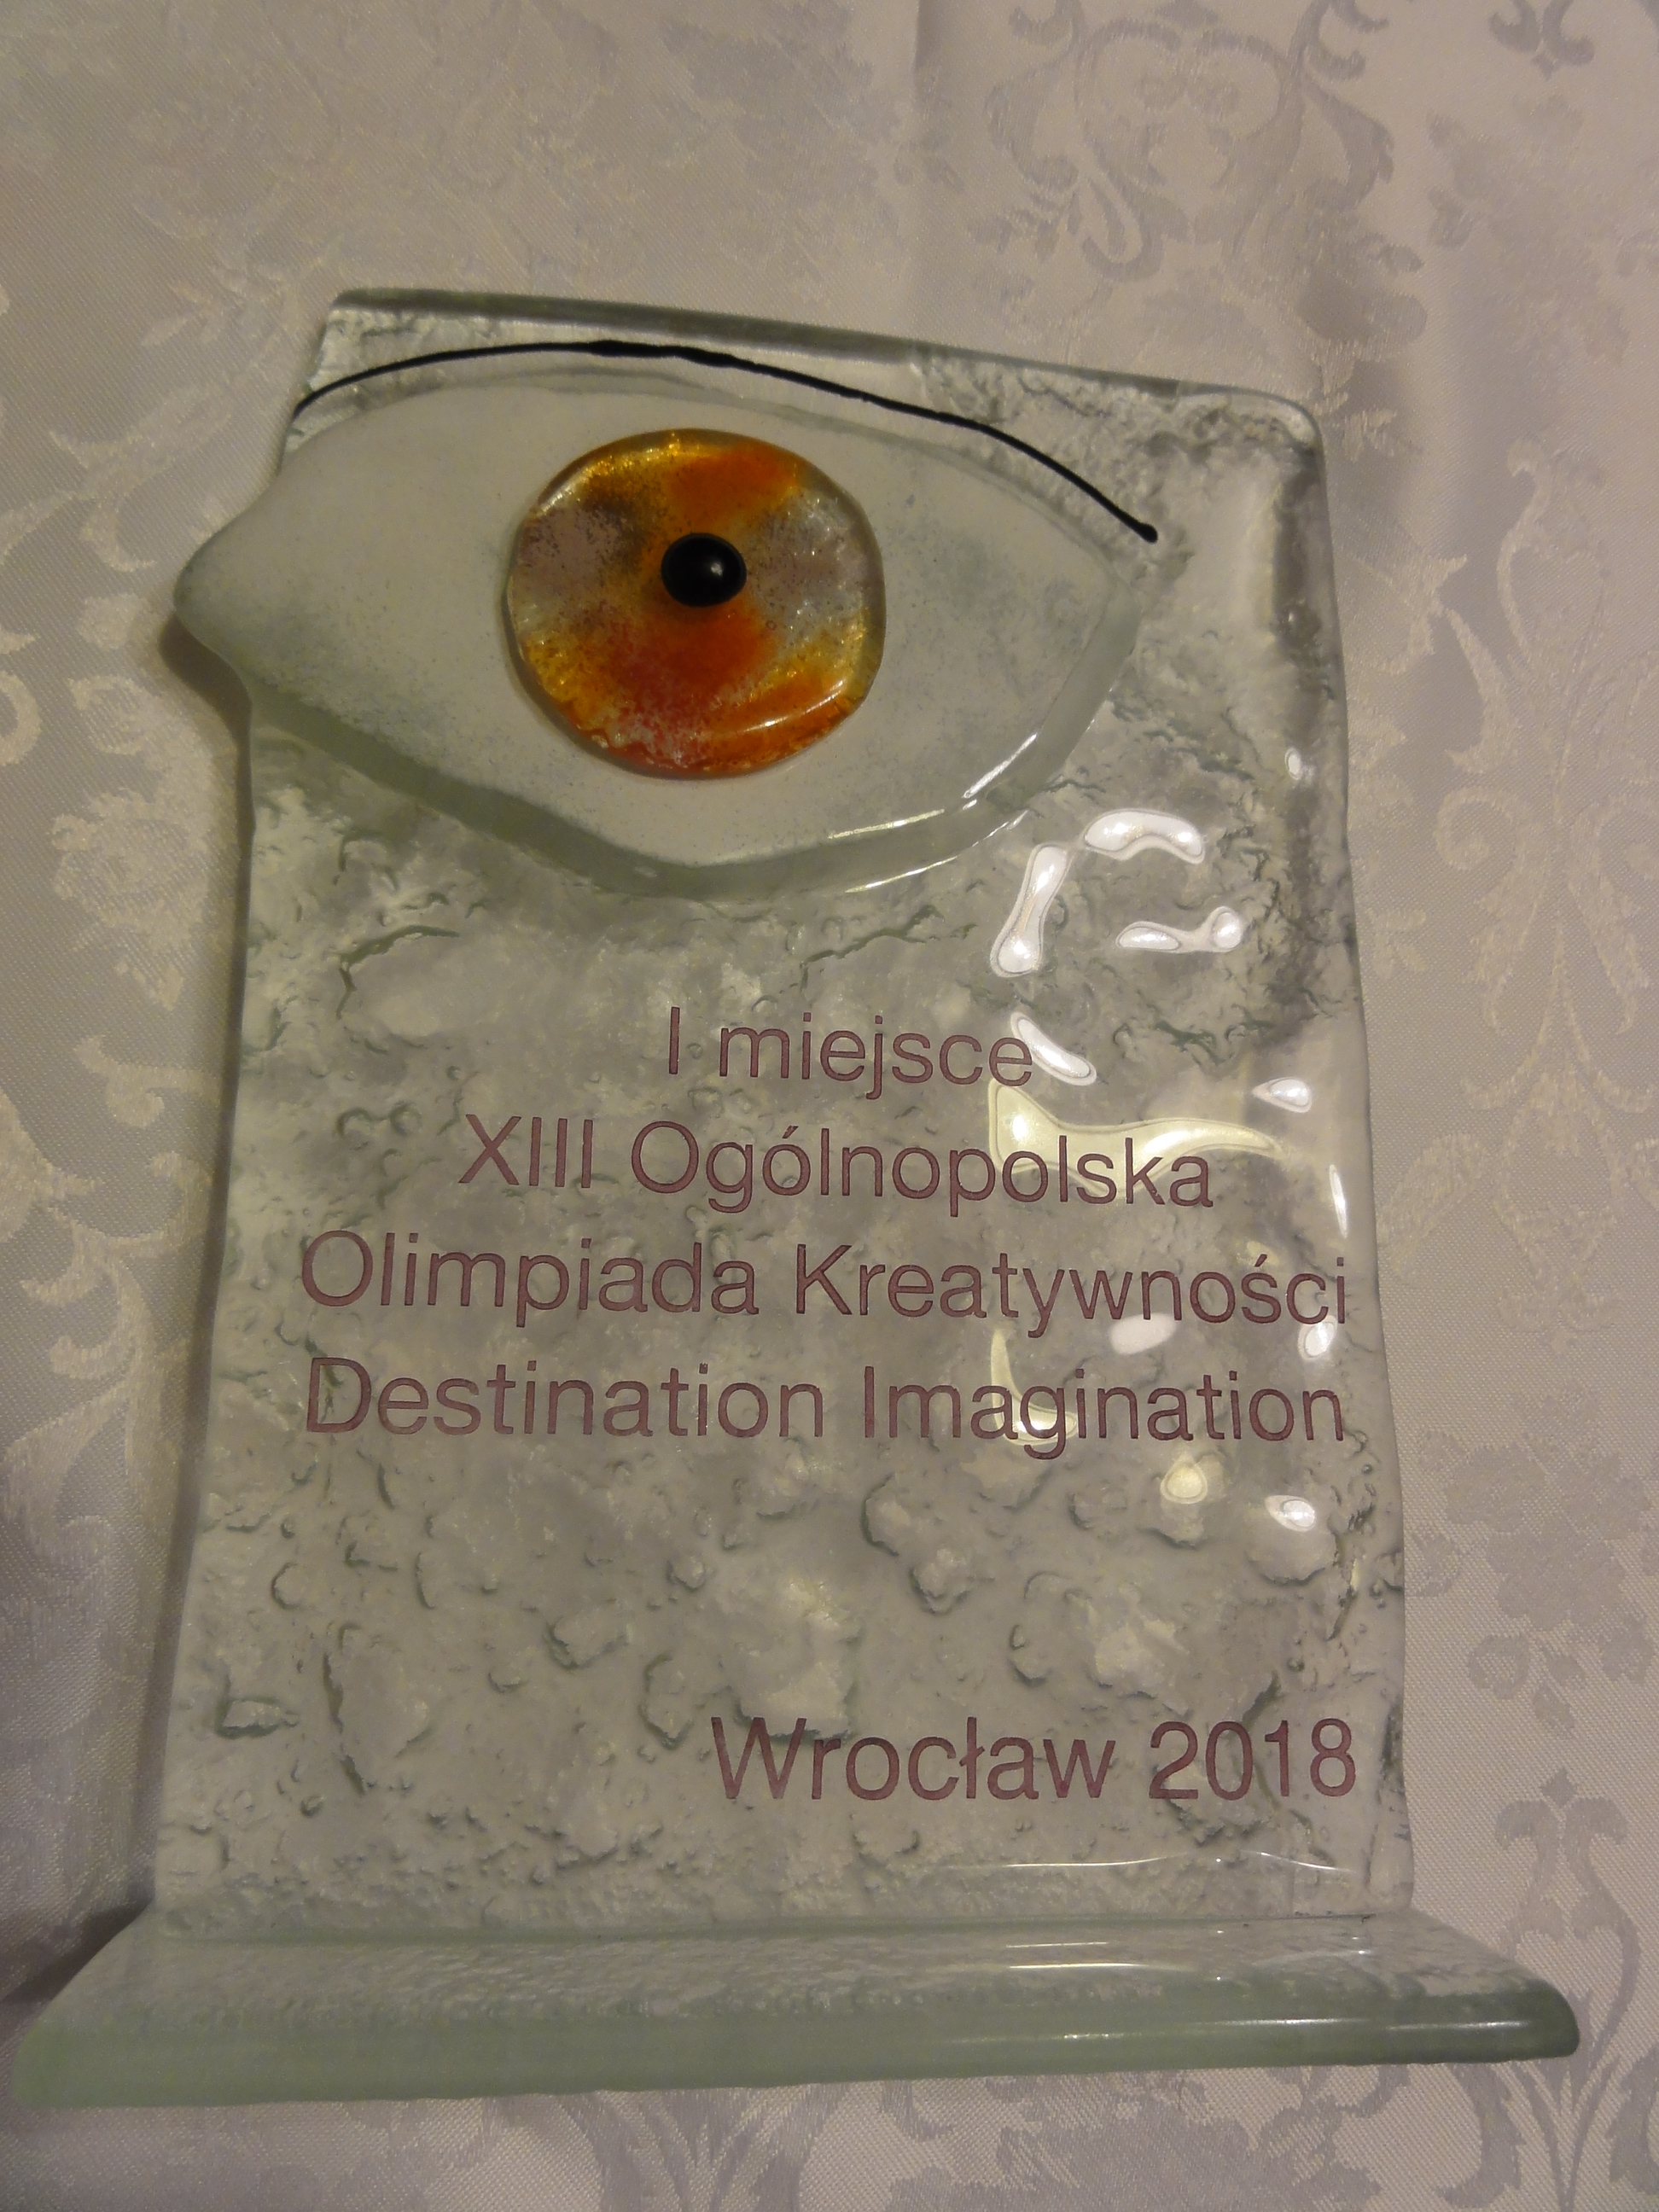 Doskonały wynik w Ogólnopolskiej Olimpiadzie Kreatywności DI